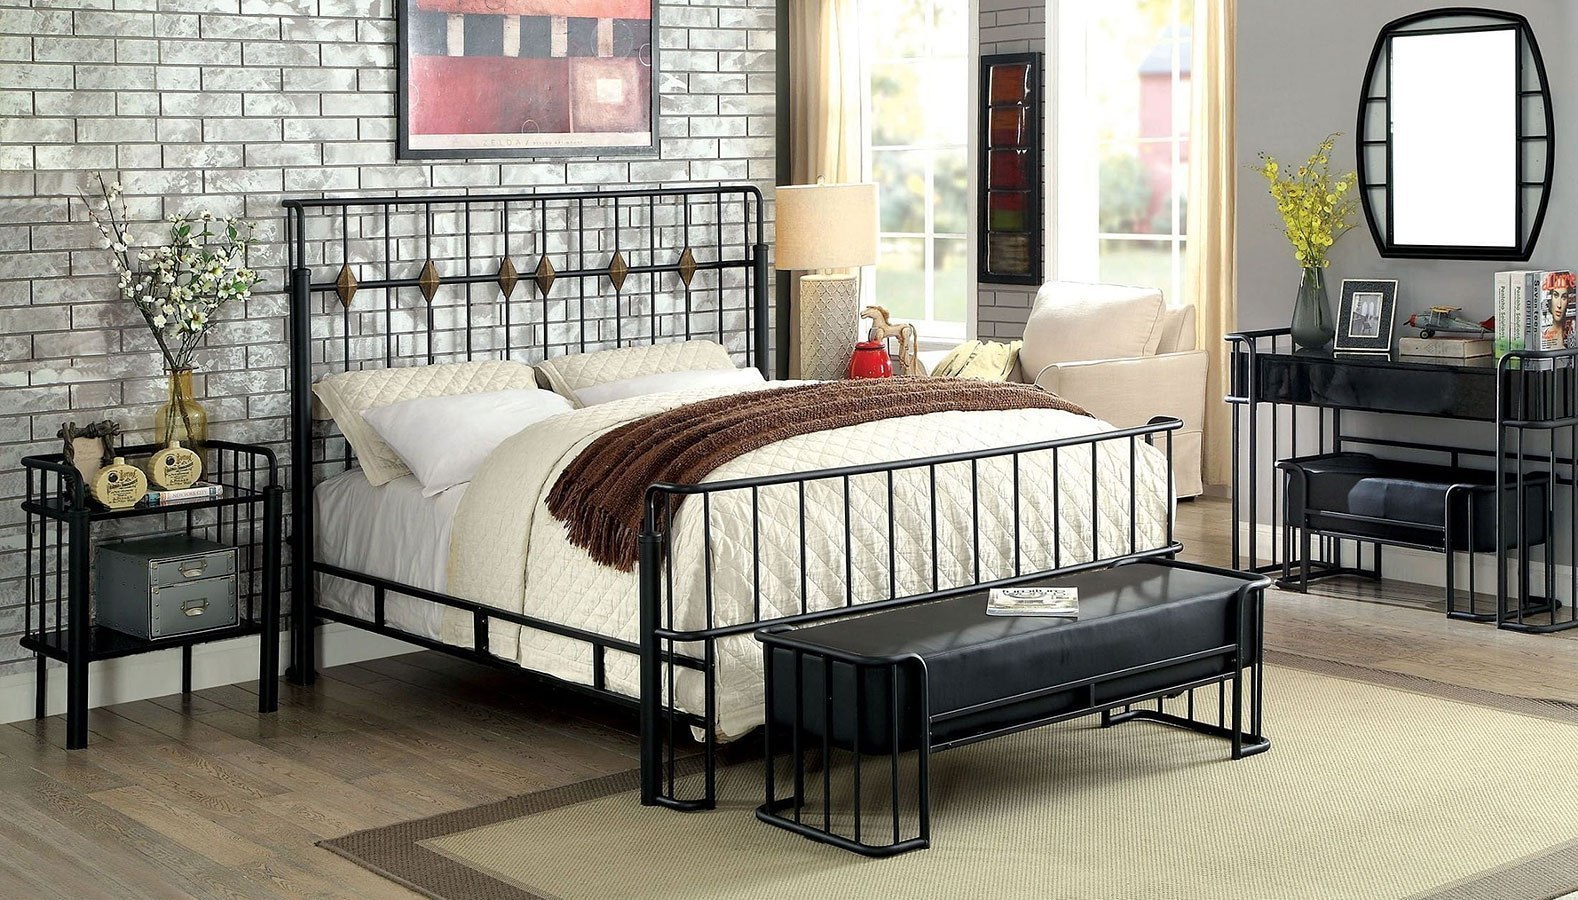 dark wood and metal bedroom furniture